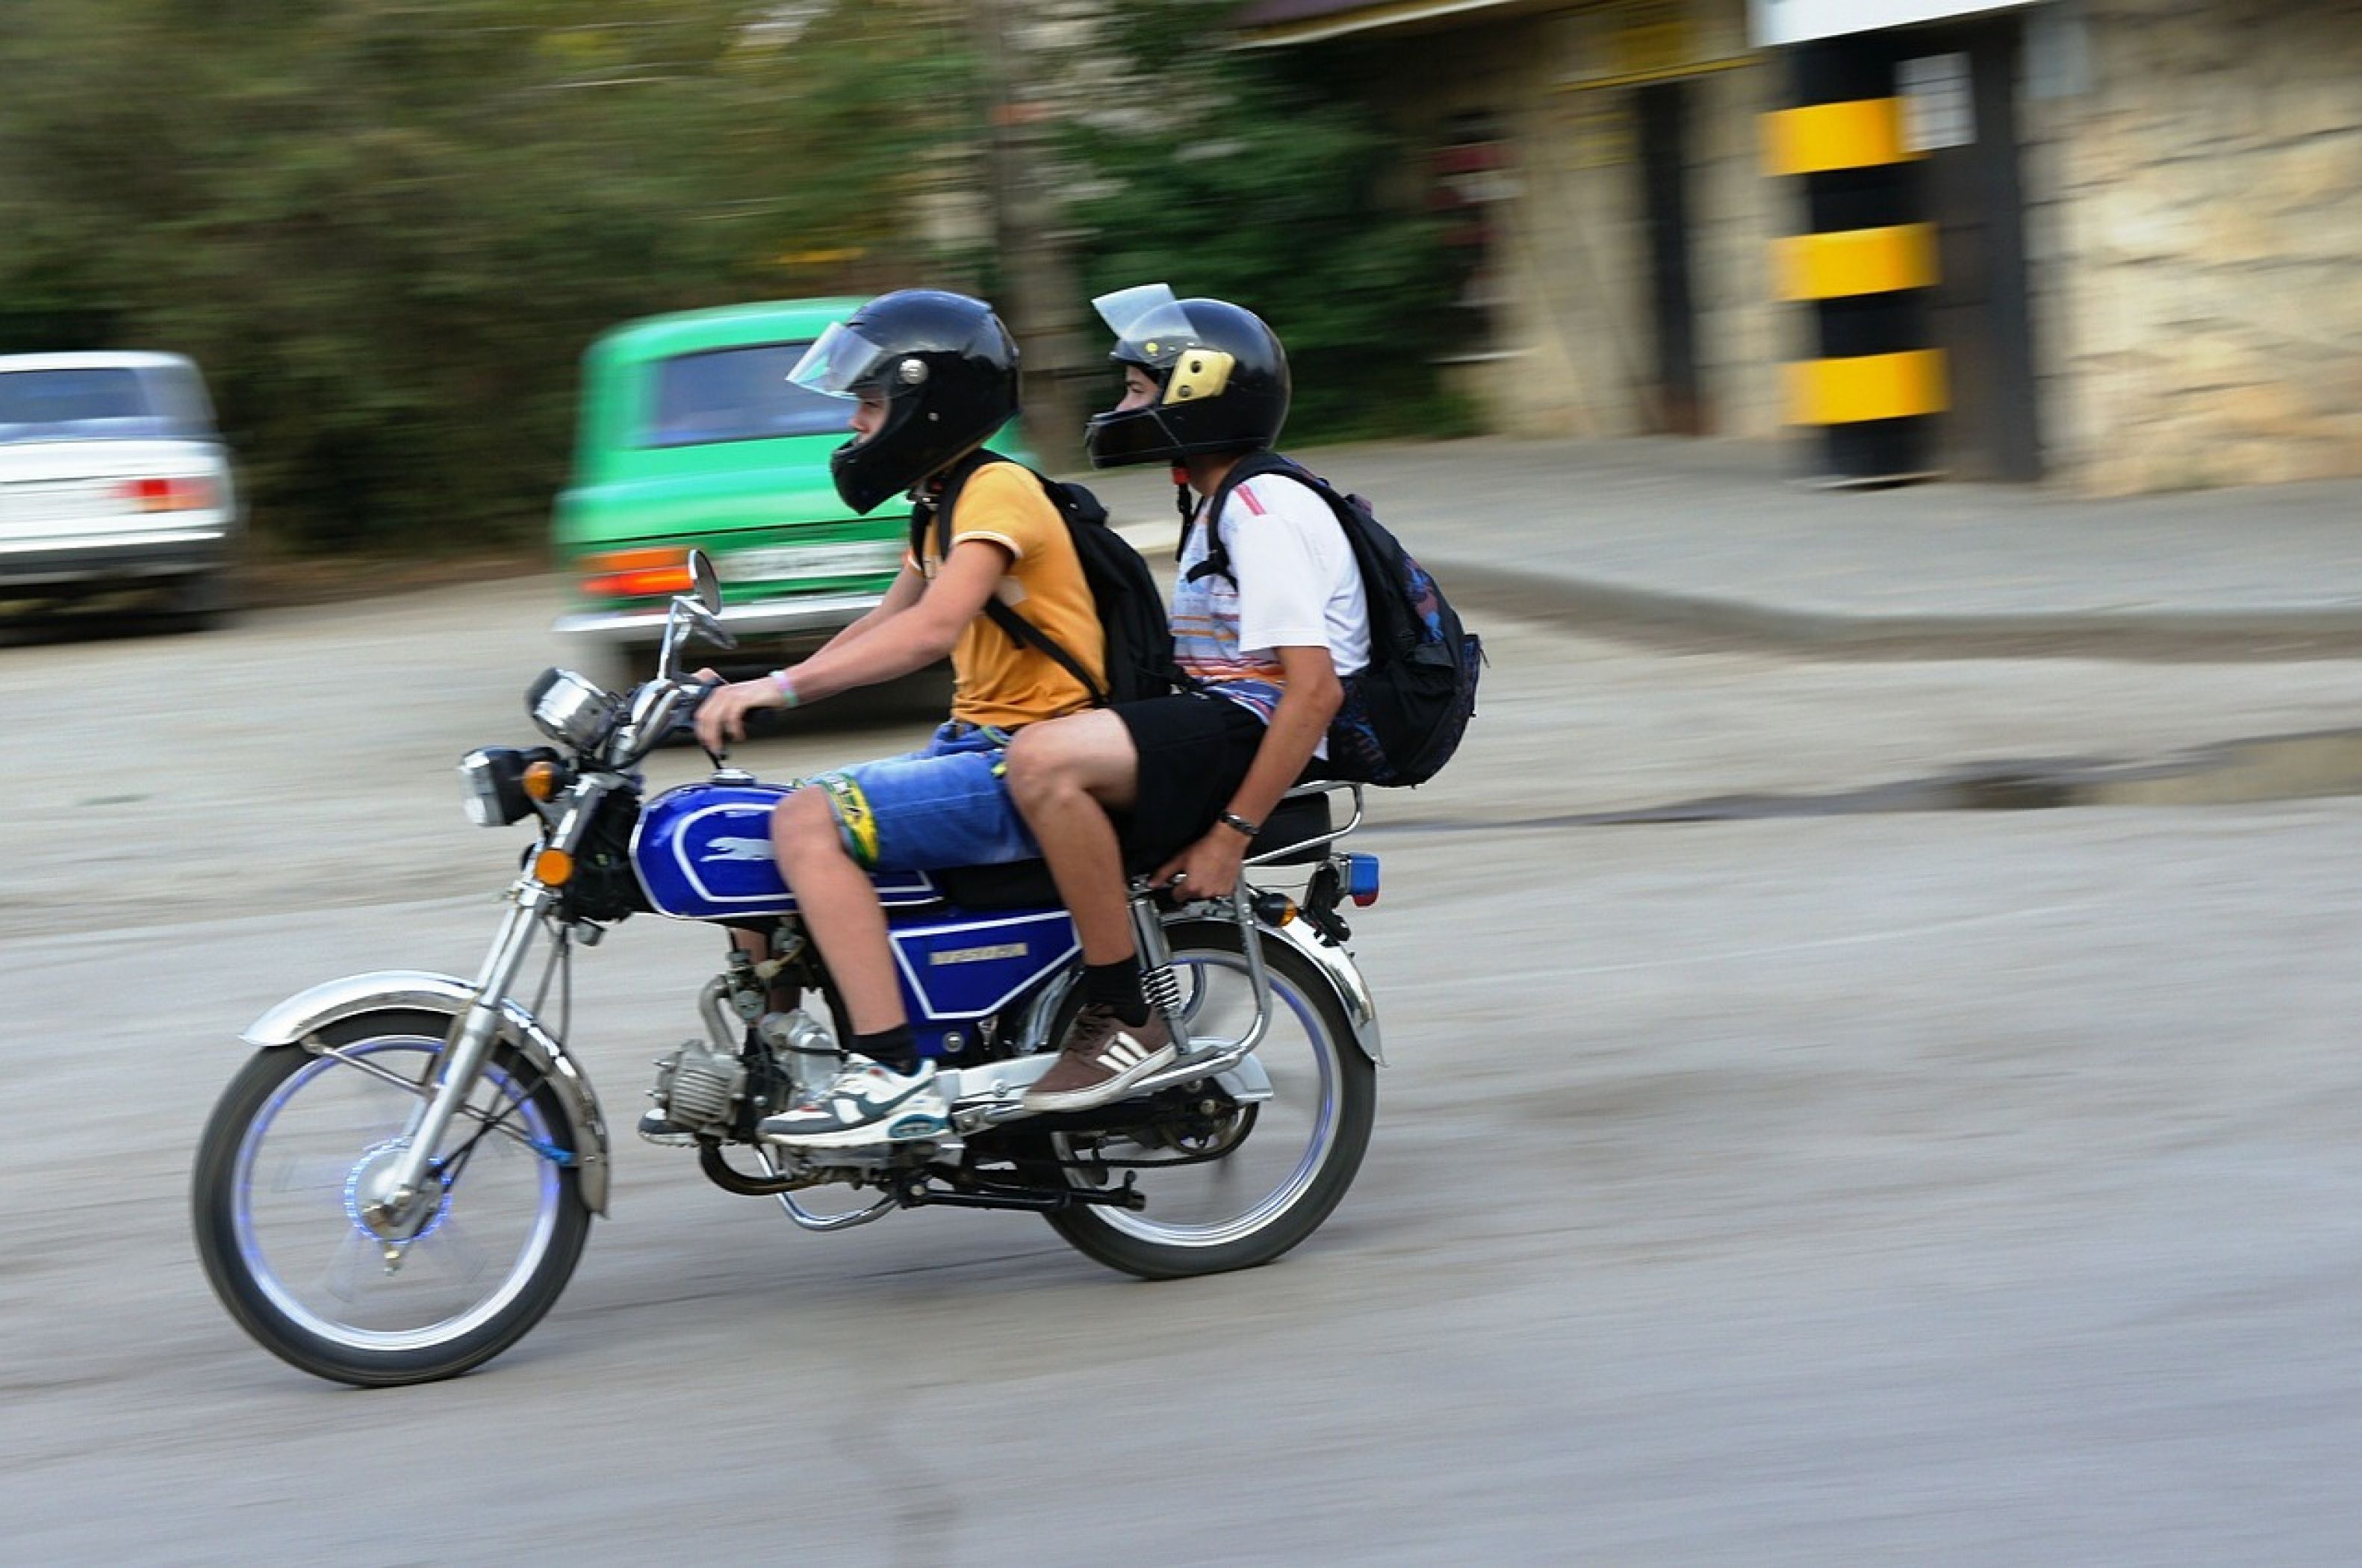 Дети ездят на мотоциклах. Мопед Альфа с пассажиром. Мотоцикл для подростка. Мотоцикл мопед. Мотоцикл для молодежи.